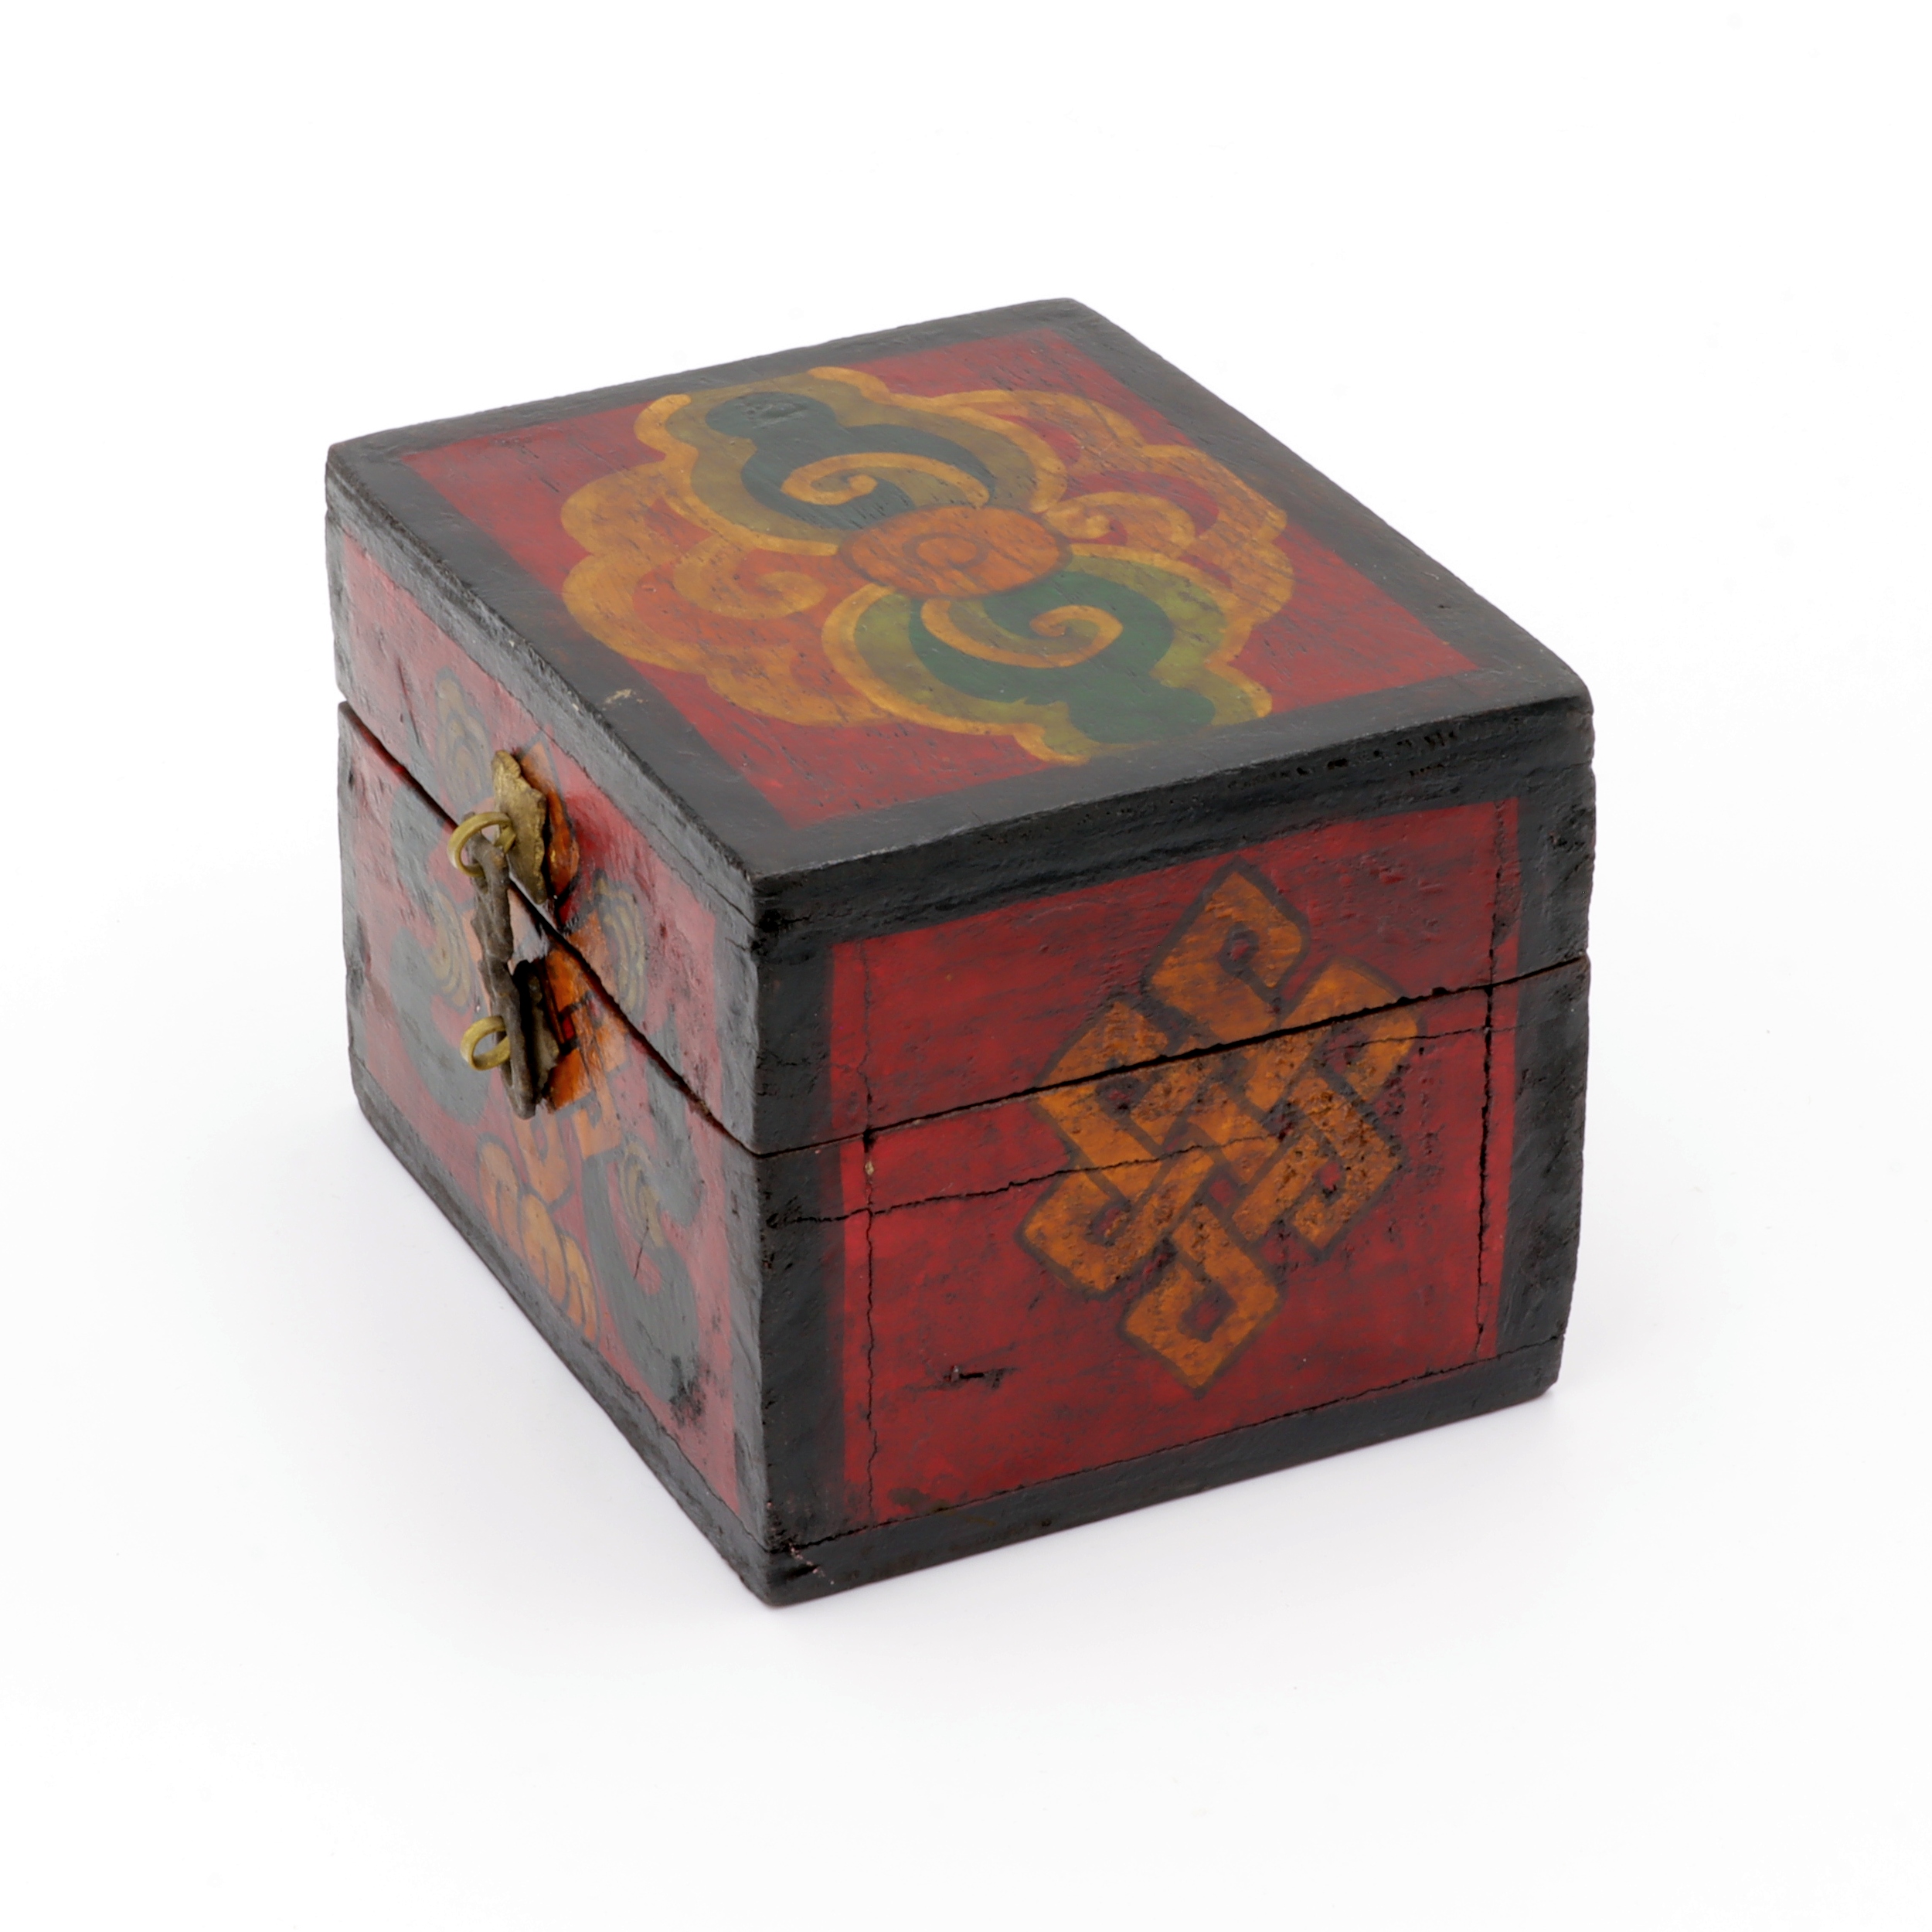 Handbemalte Kiste aus Holz - Endlosknoten - Truhen Design - typisch nepalesiche Farben - dunkel - fair gehandelt aus Nepal